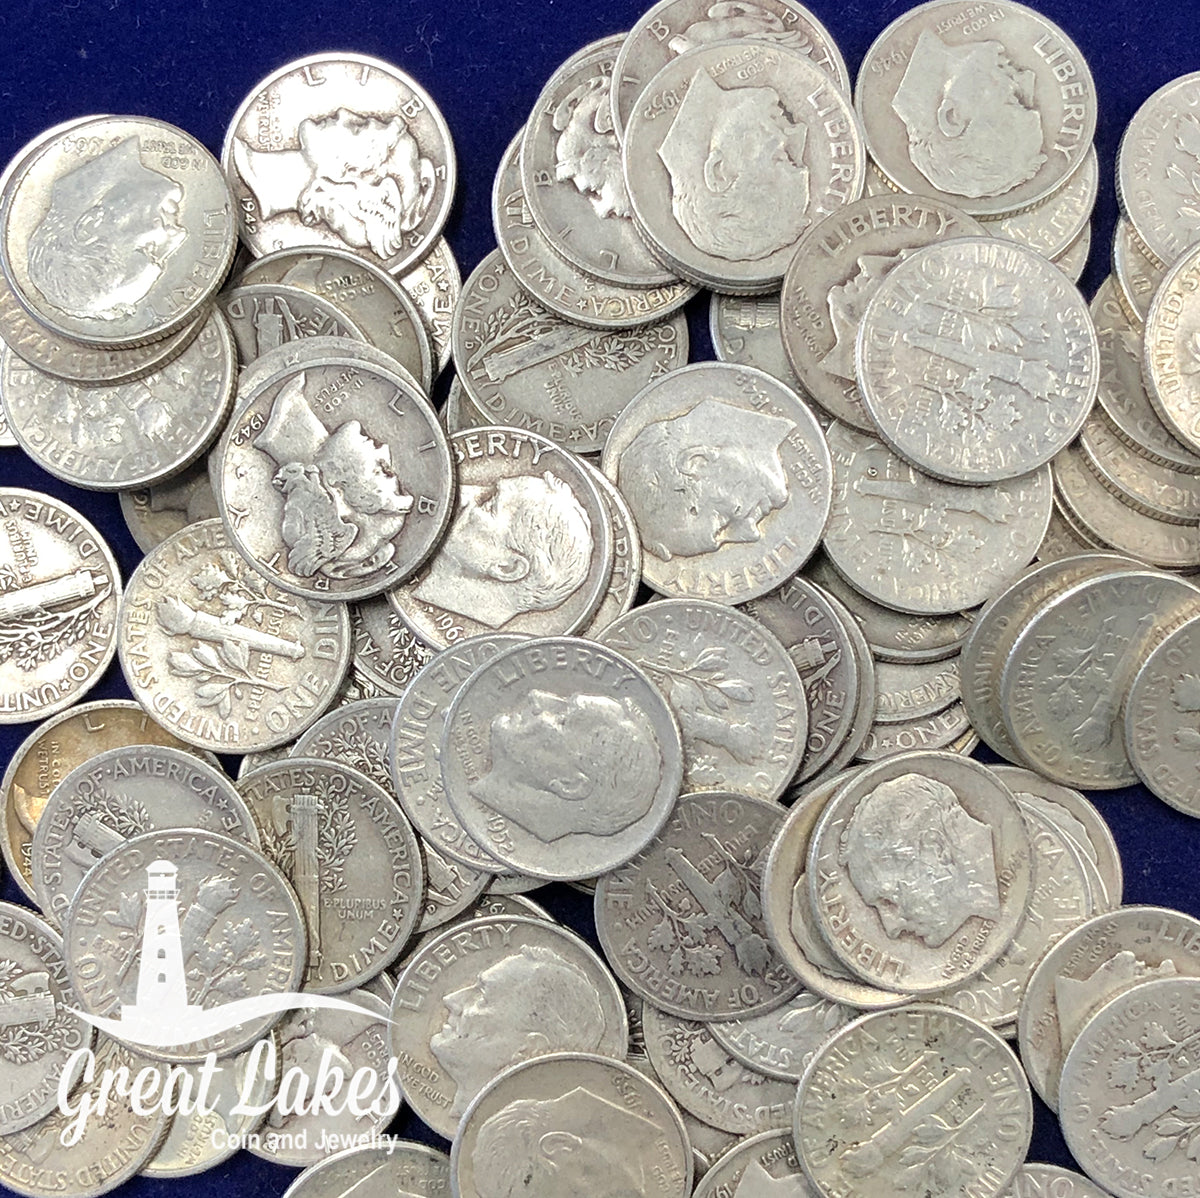 90% Silver Mercury Head Dimes - $5 FV